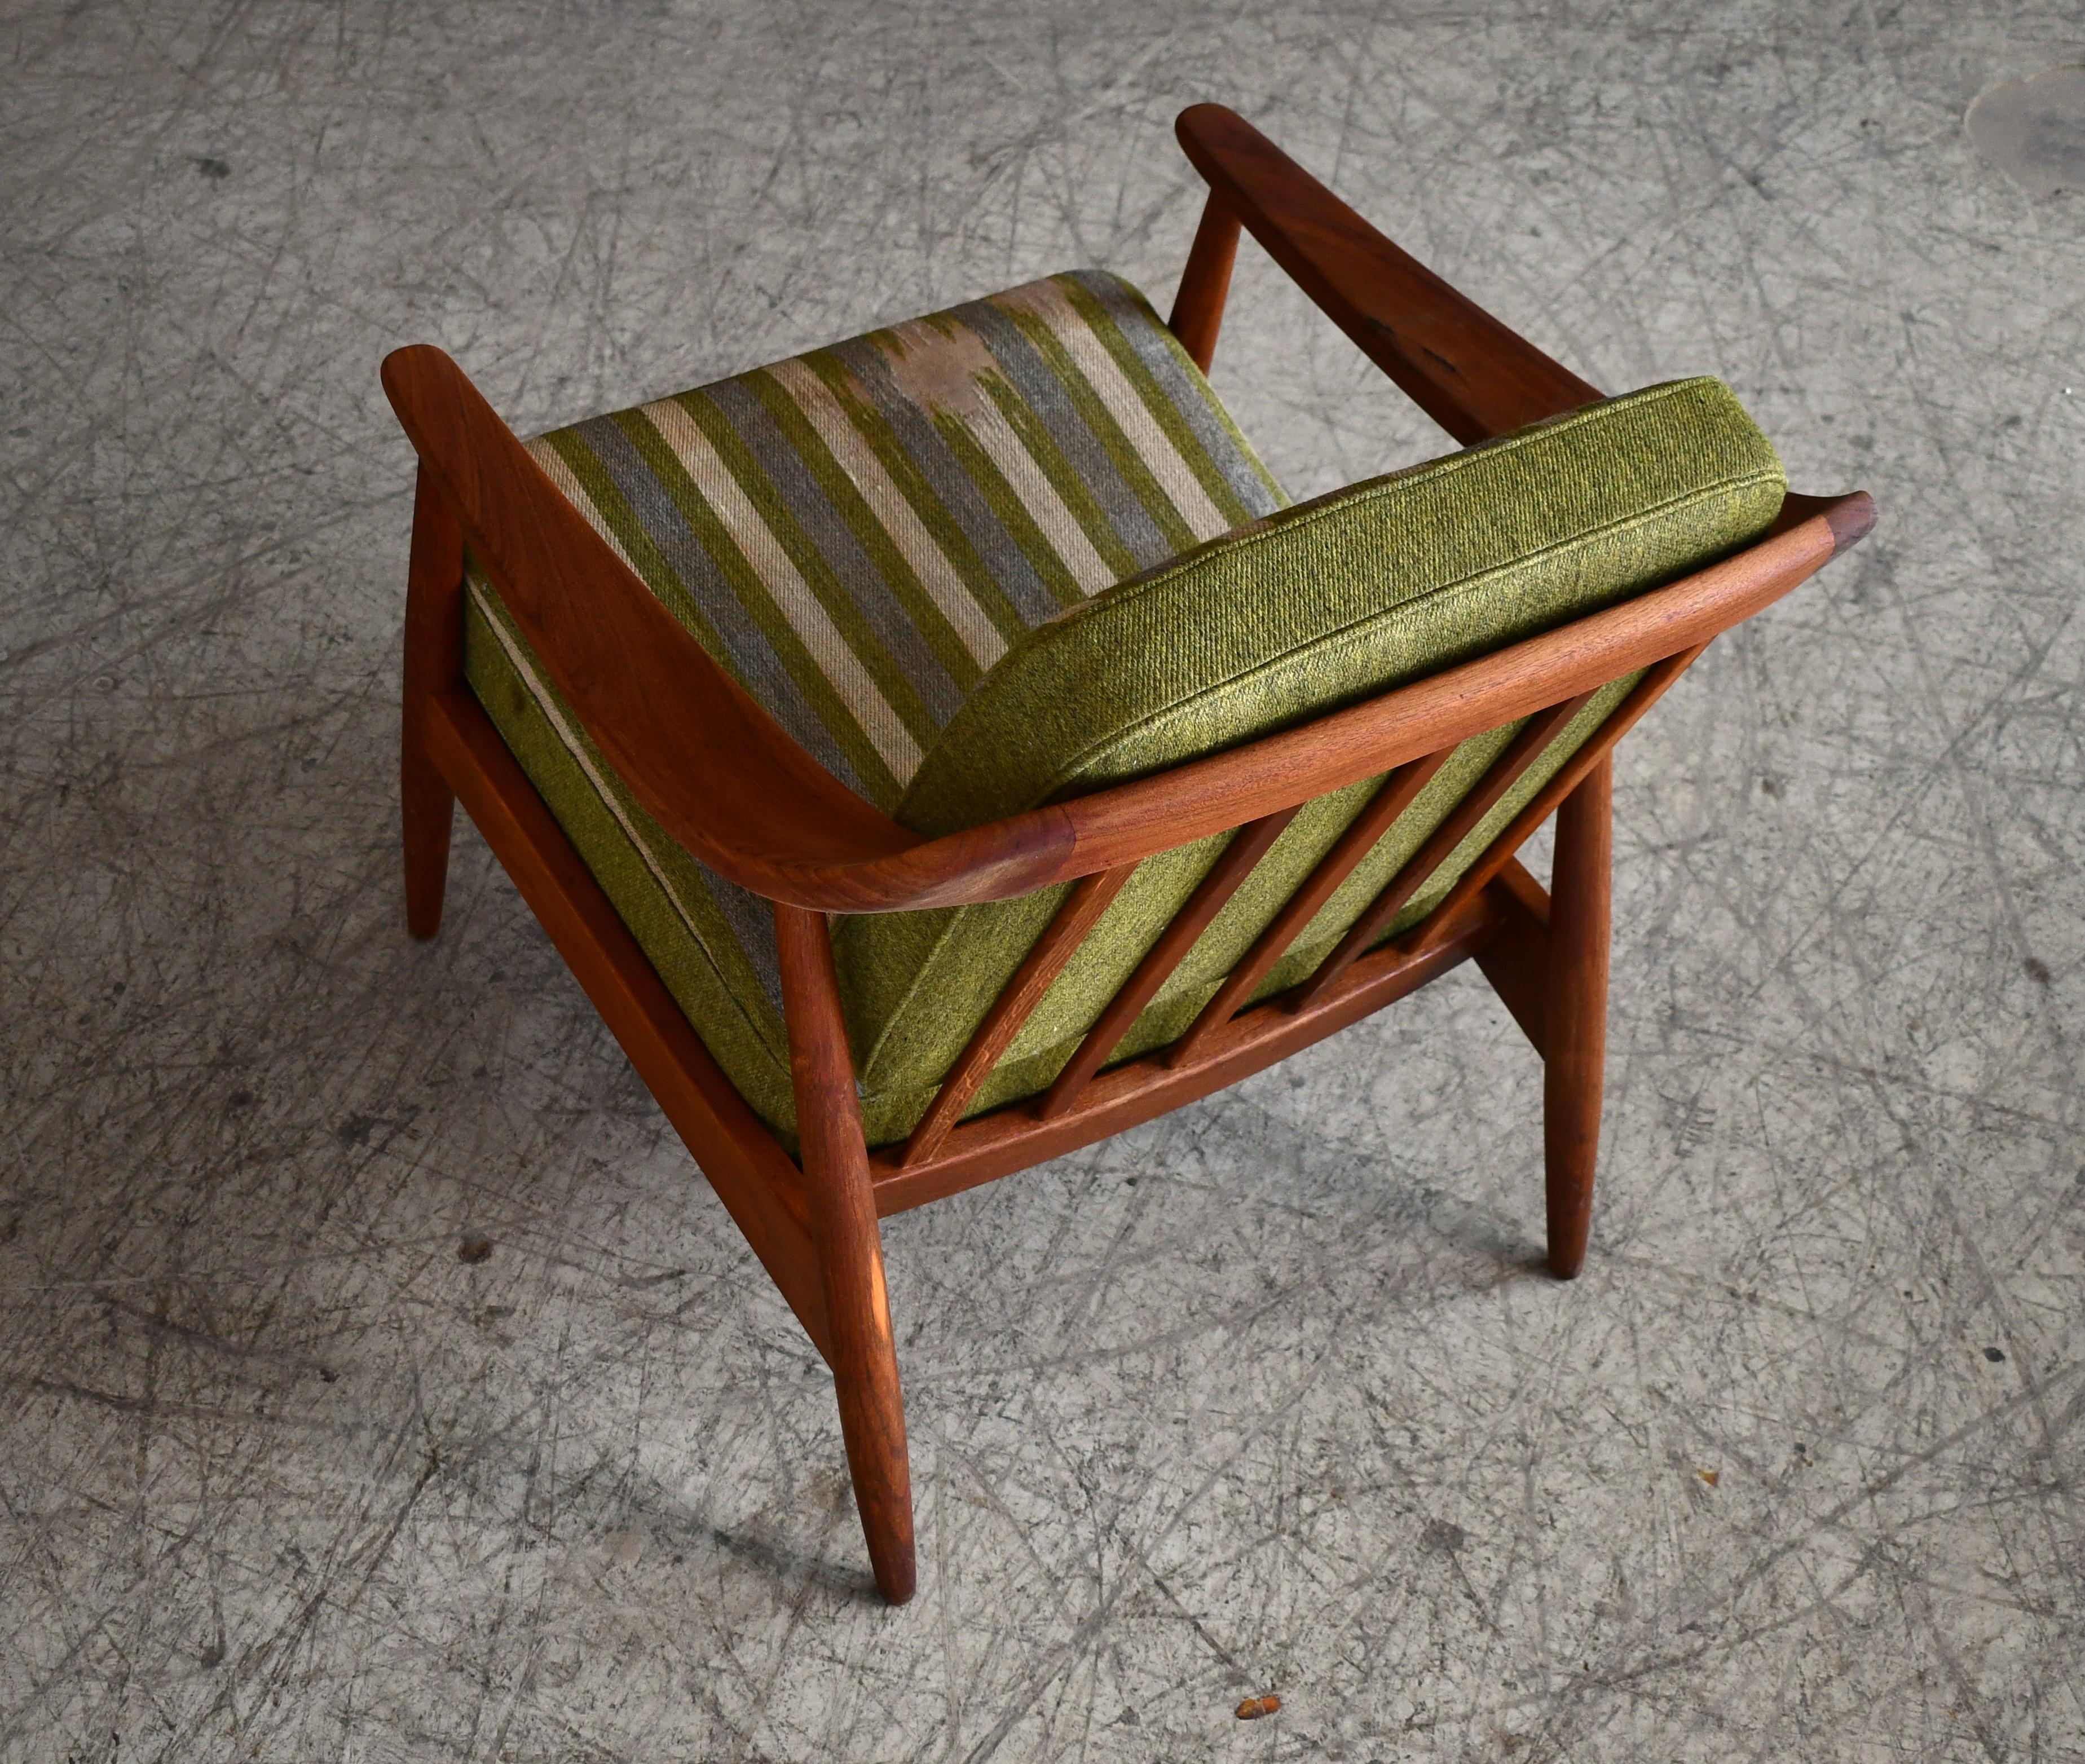 Wool Illum Wikkelsø Easy Chair In Teak and Oak for Søren Willadsen, Denmark 1950s For Sale